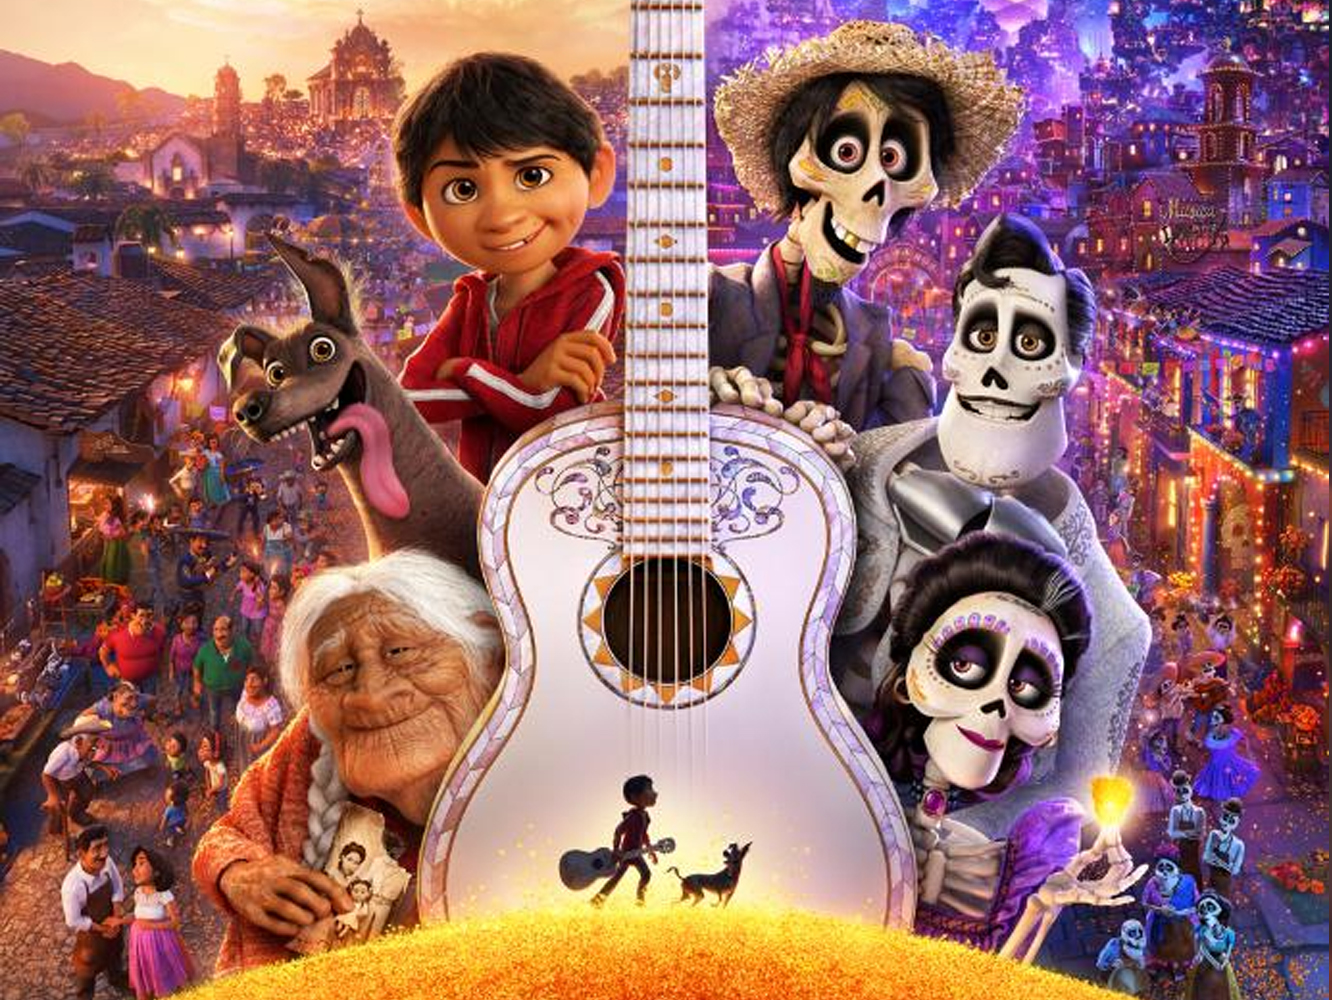  Tráiler más explicativo para ‘Coco’, la aventura latina que Disney propone para 2017